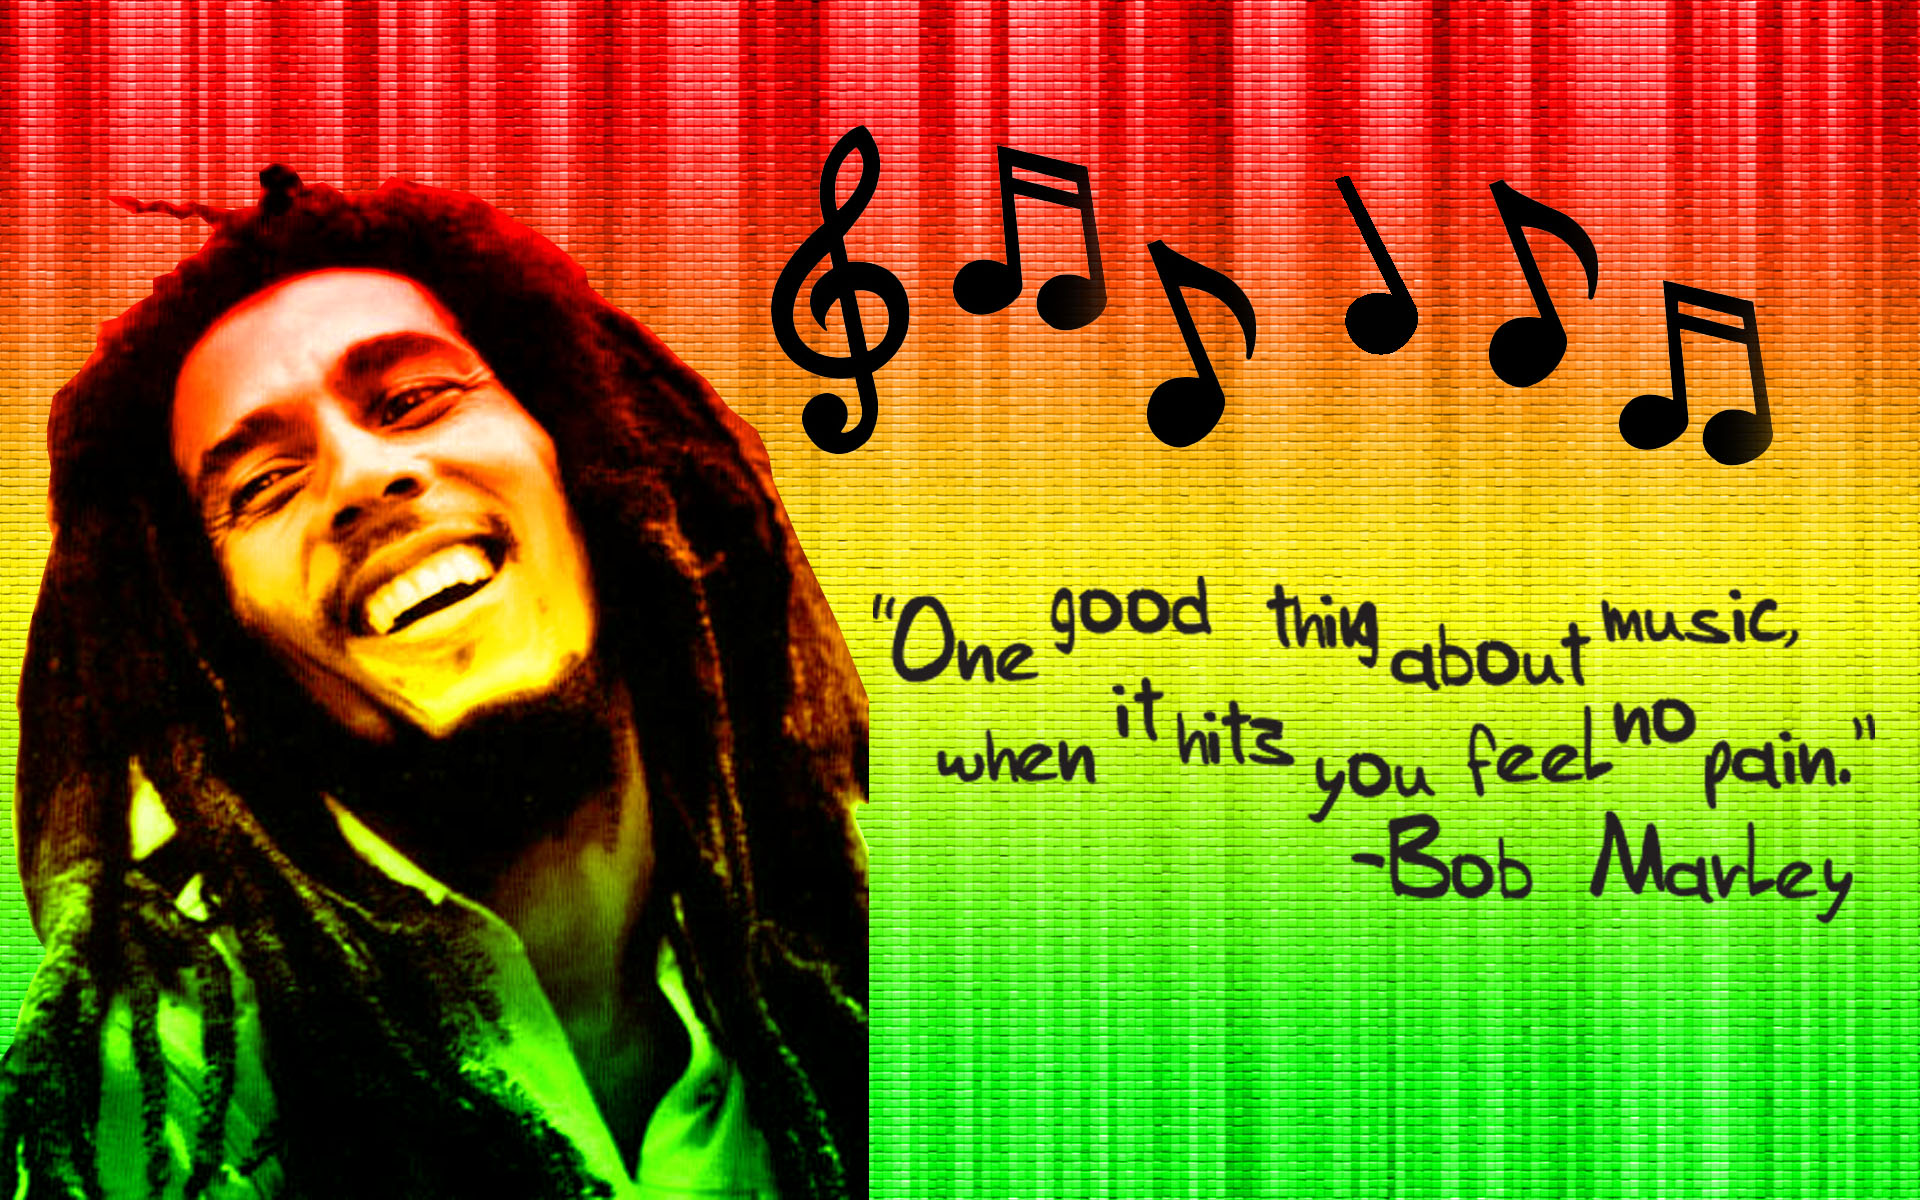 Bob Marley Quotes 19201200 128123 HD Wallpaper Res 1920x1200